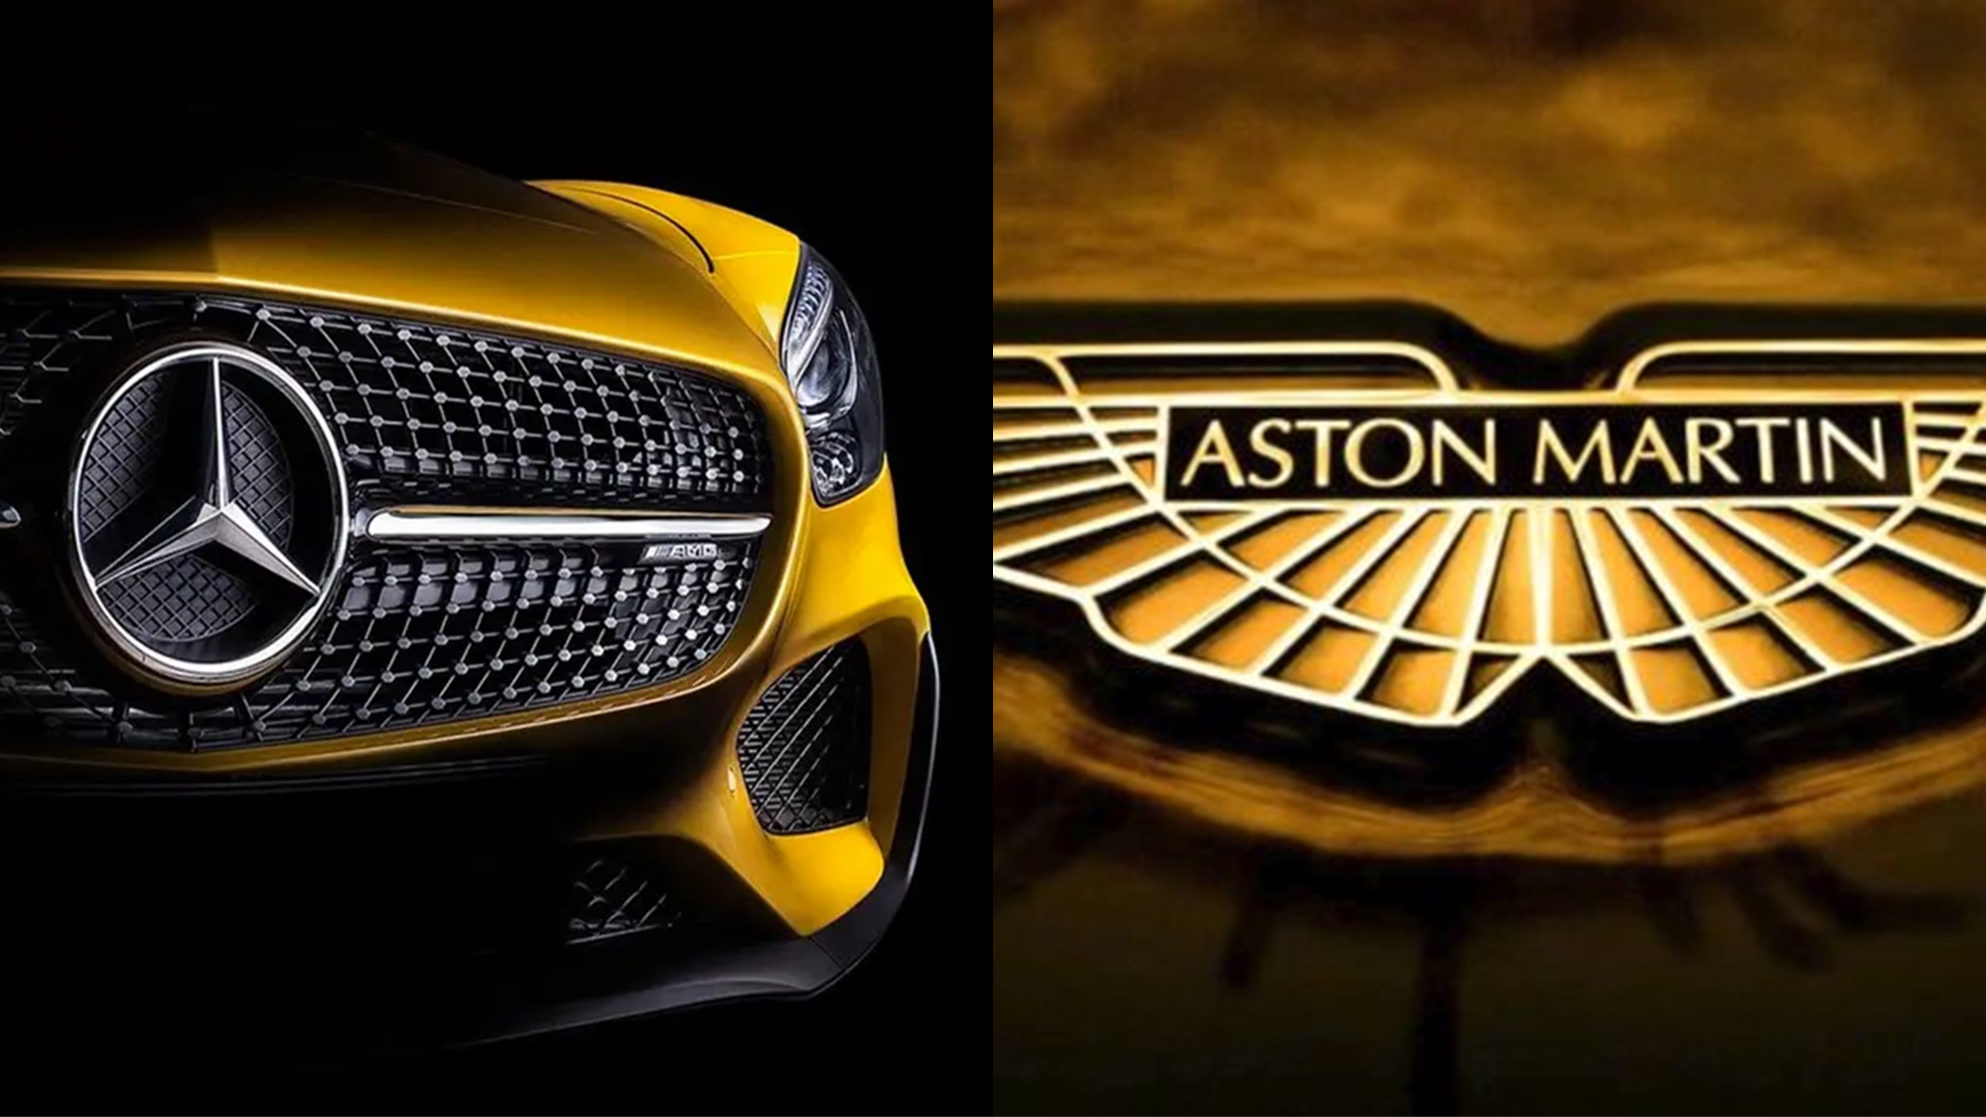 Mercedes Benz And Aston Martin Logos